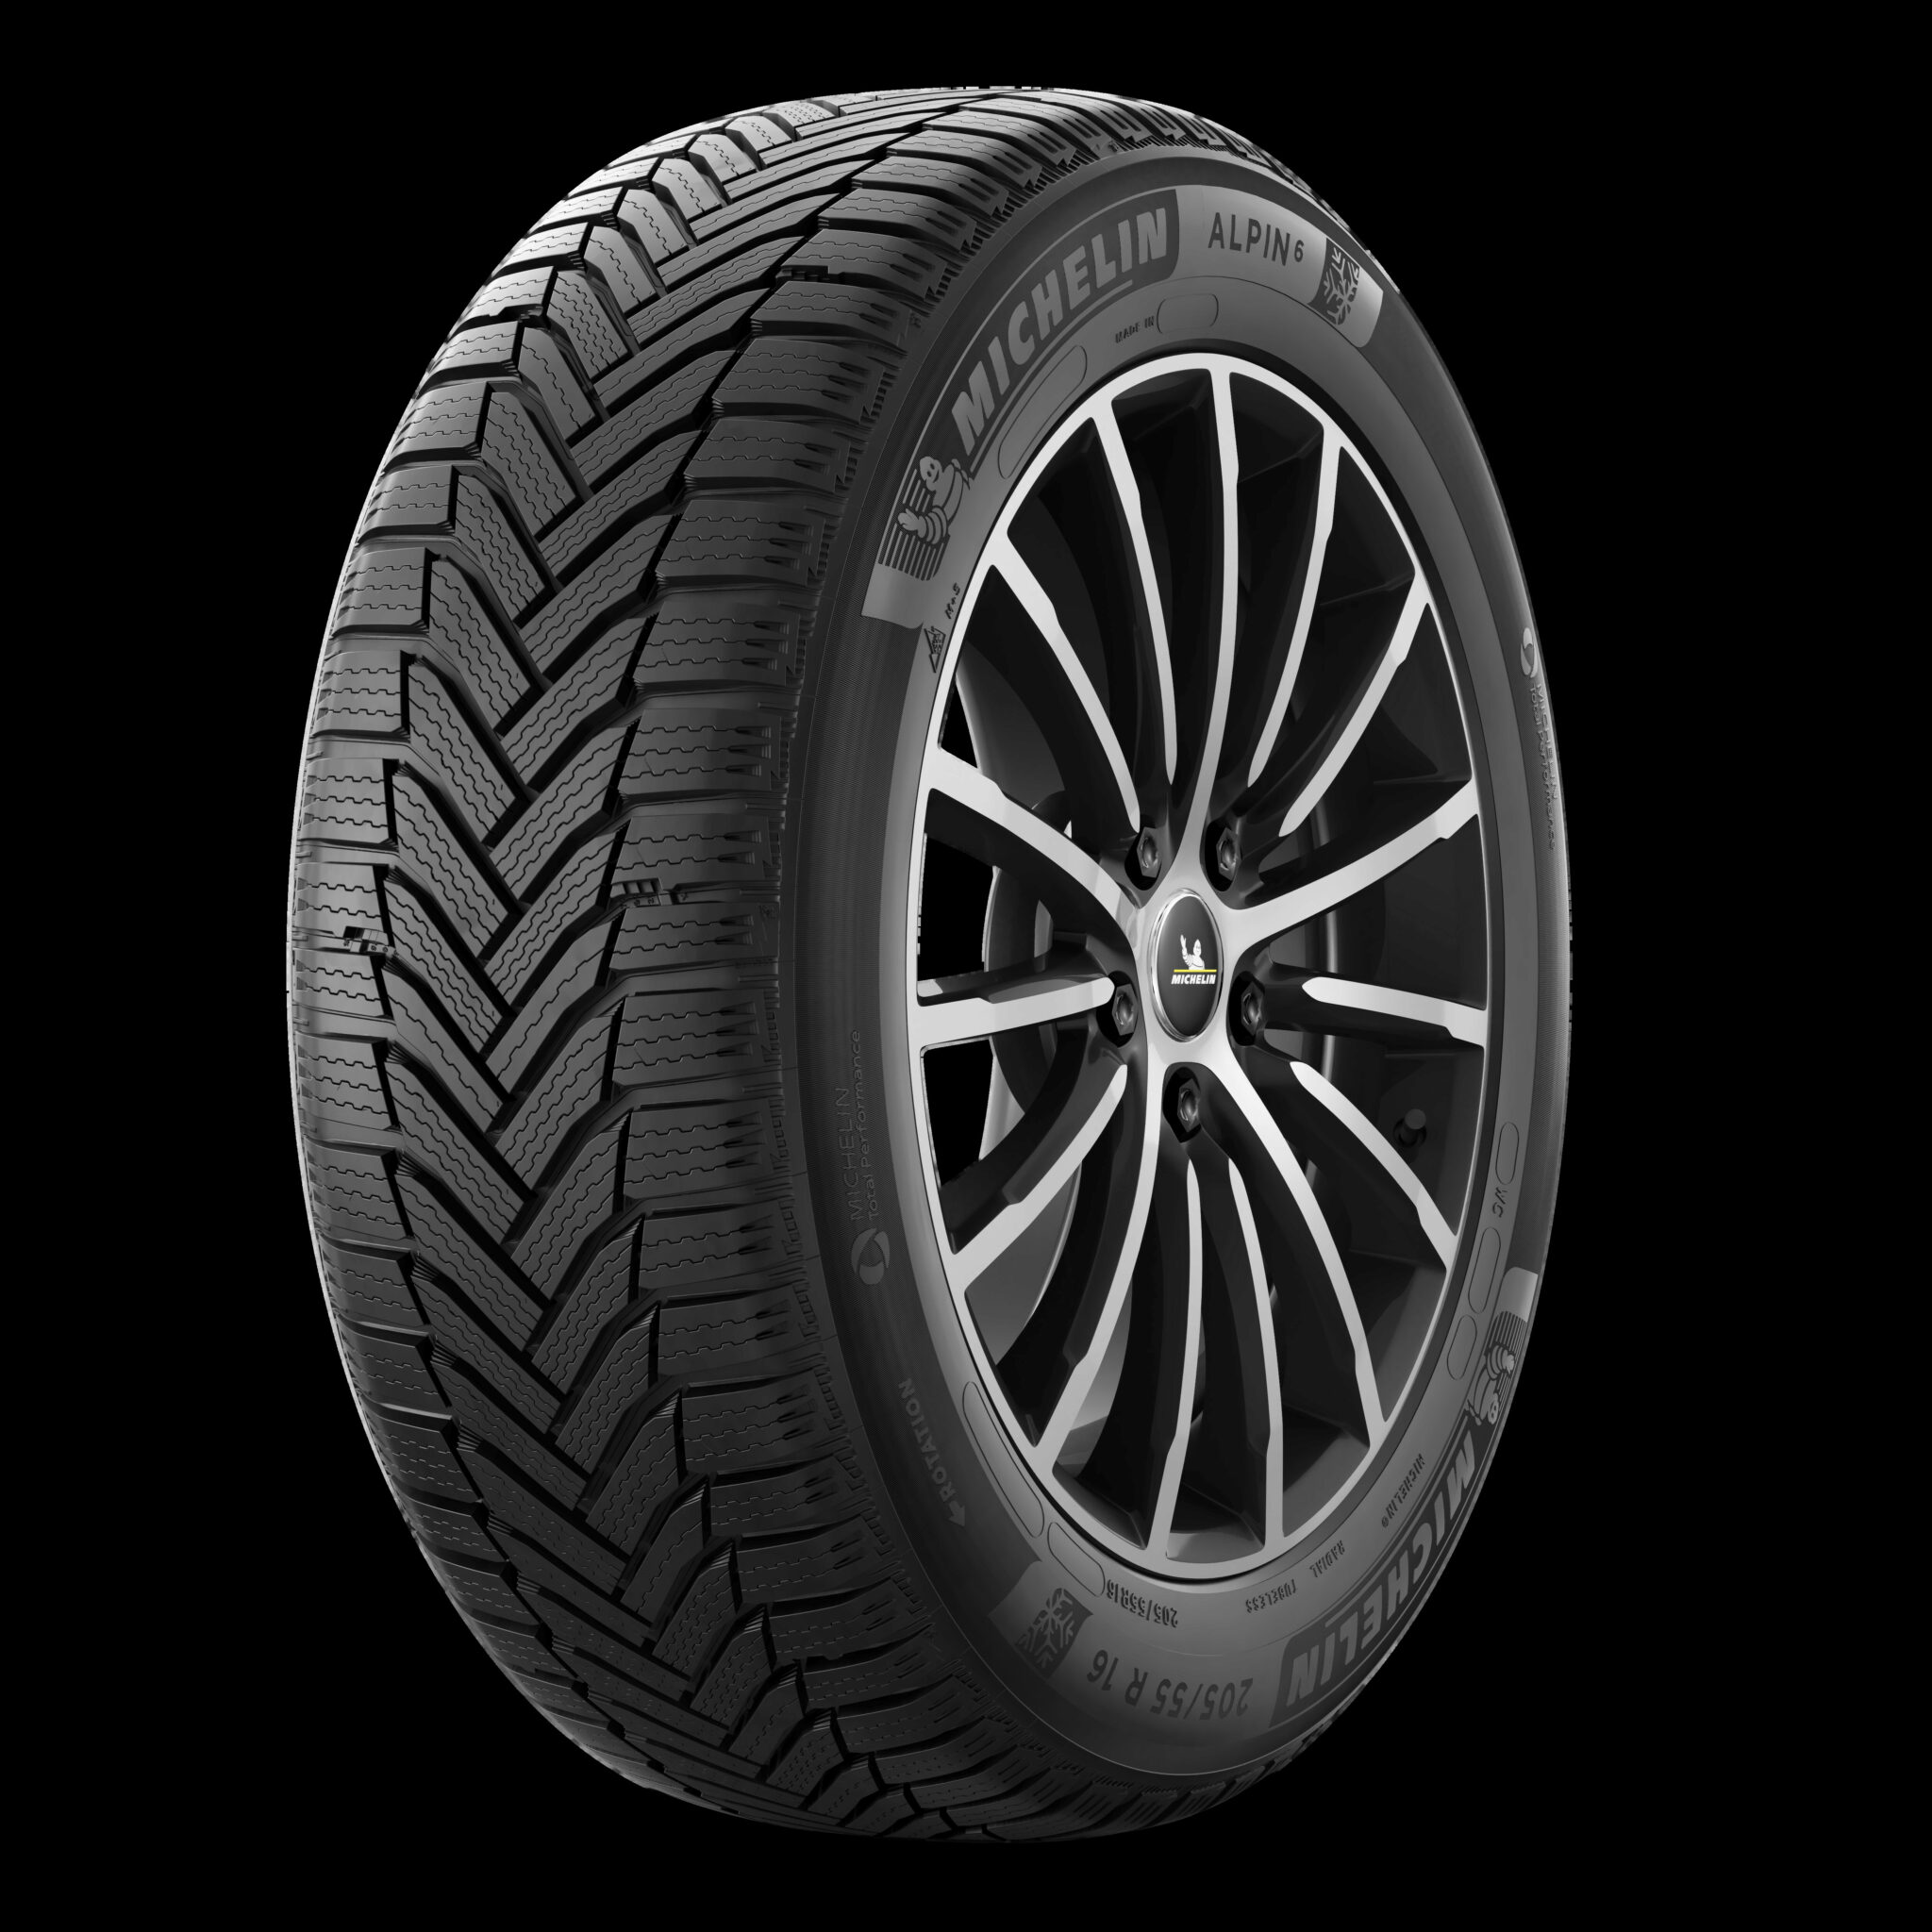 Migliori Pneumatici 2021 Bridgestone Michelin O Dunlop Sono I Migliori Pneumatici Per Il 2021